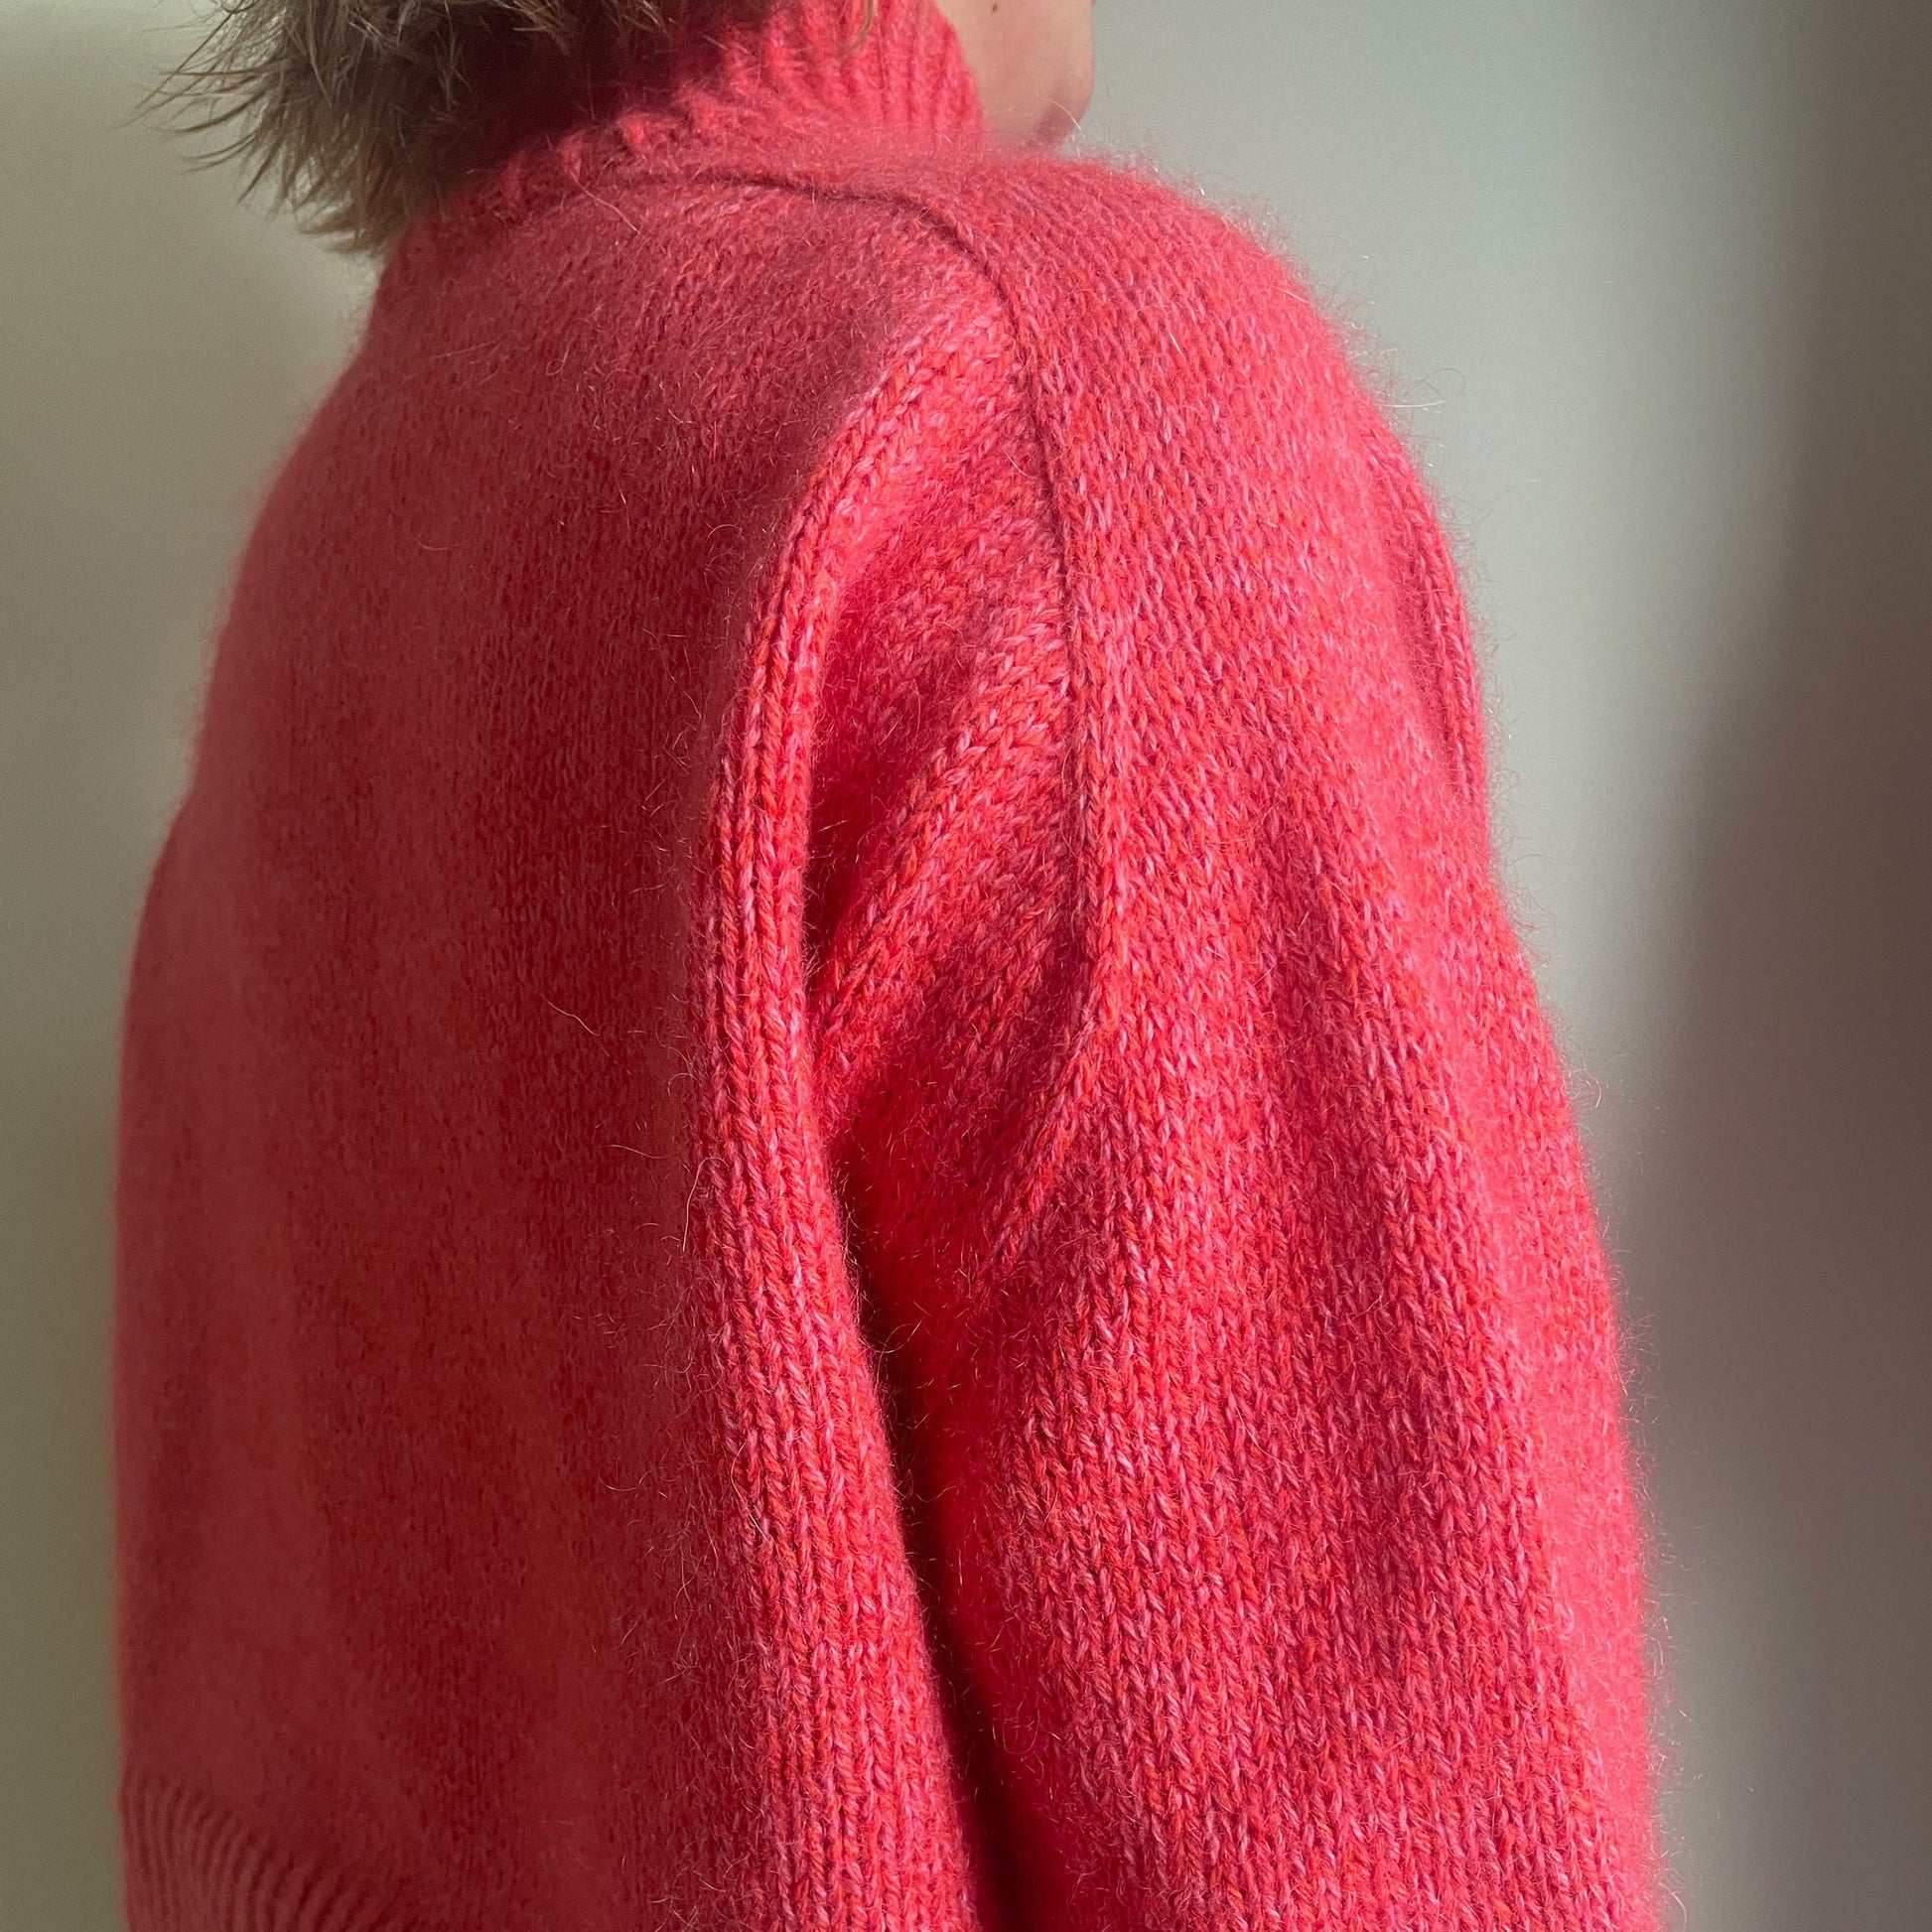 Majse Sweater knitting pattern Pastelkollektivet Martine